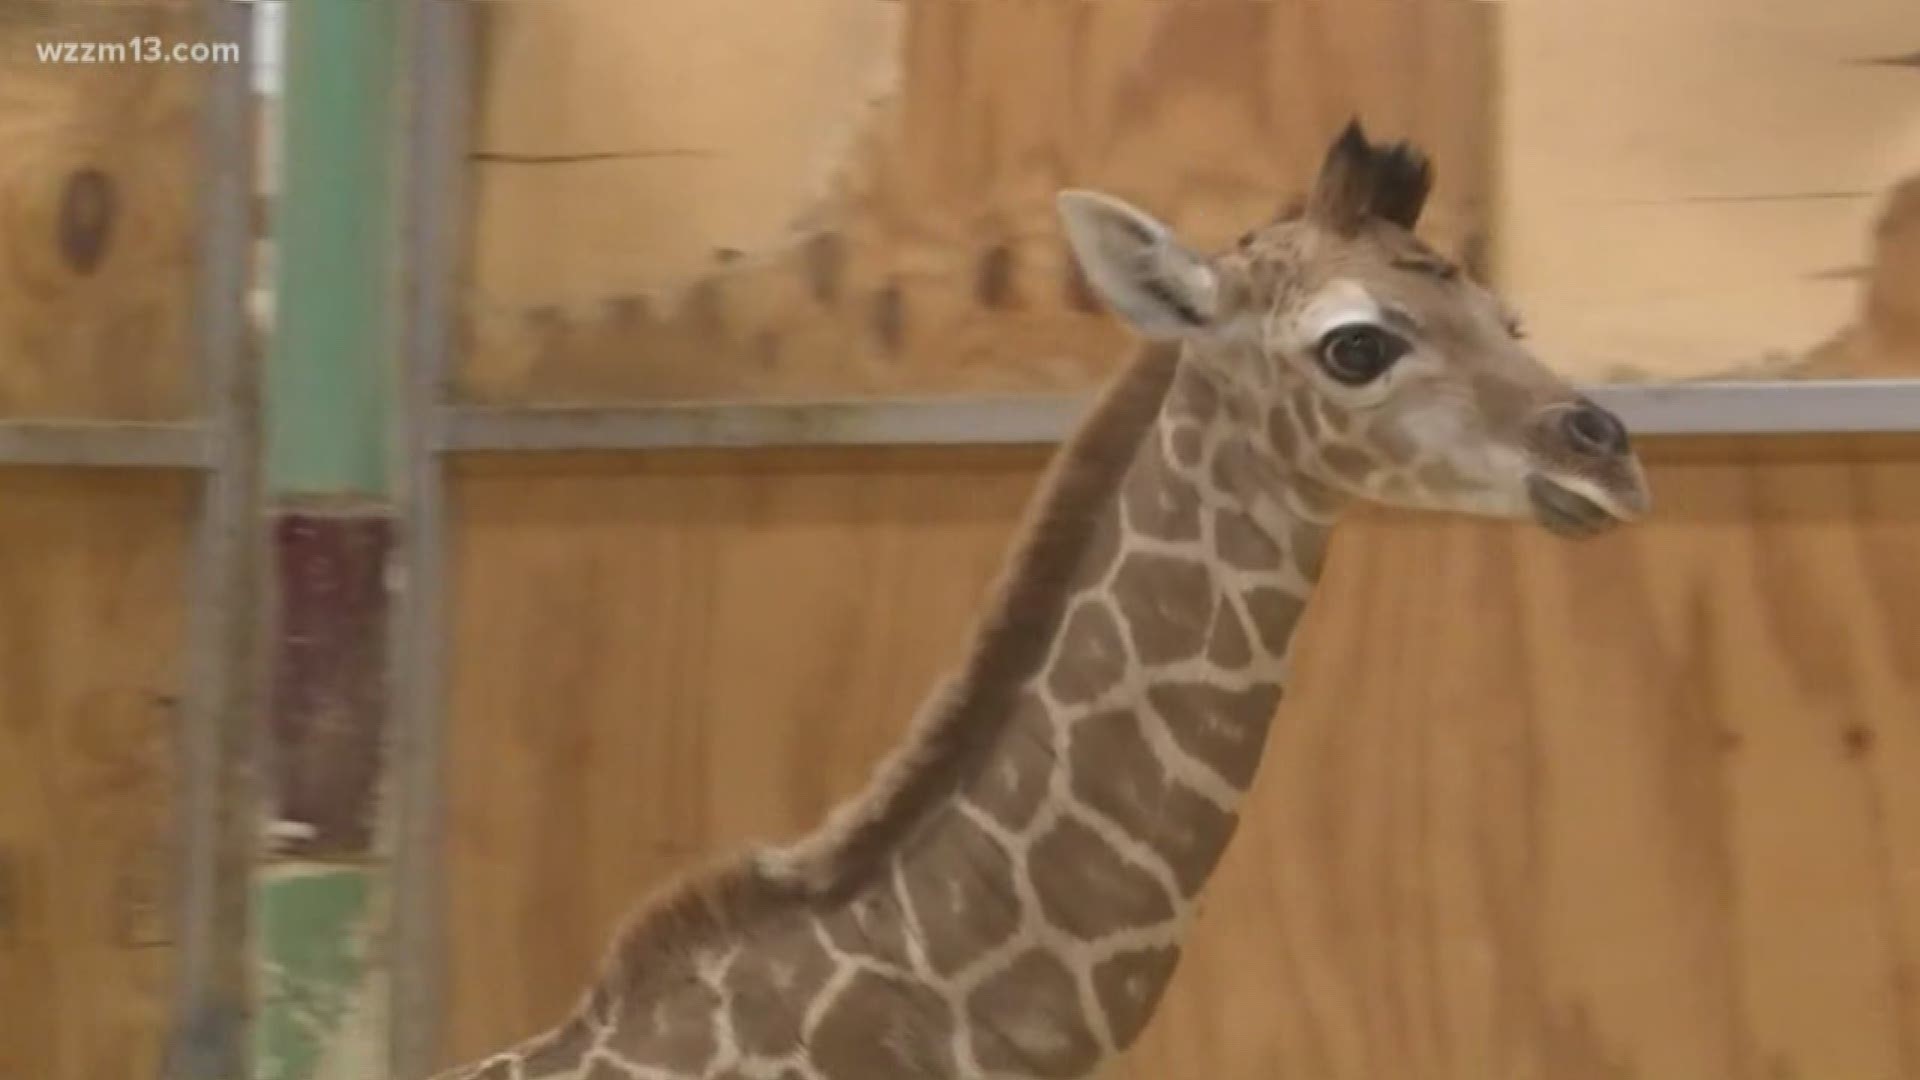 Boulder Ridge Park gets a new giraffe